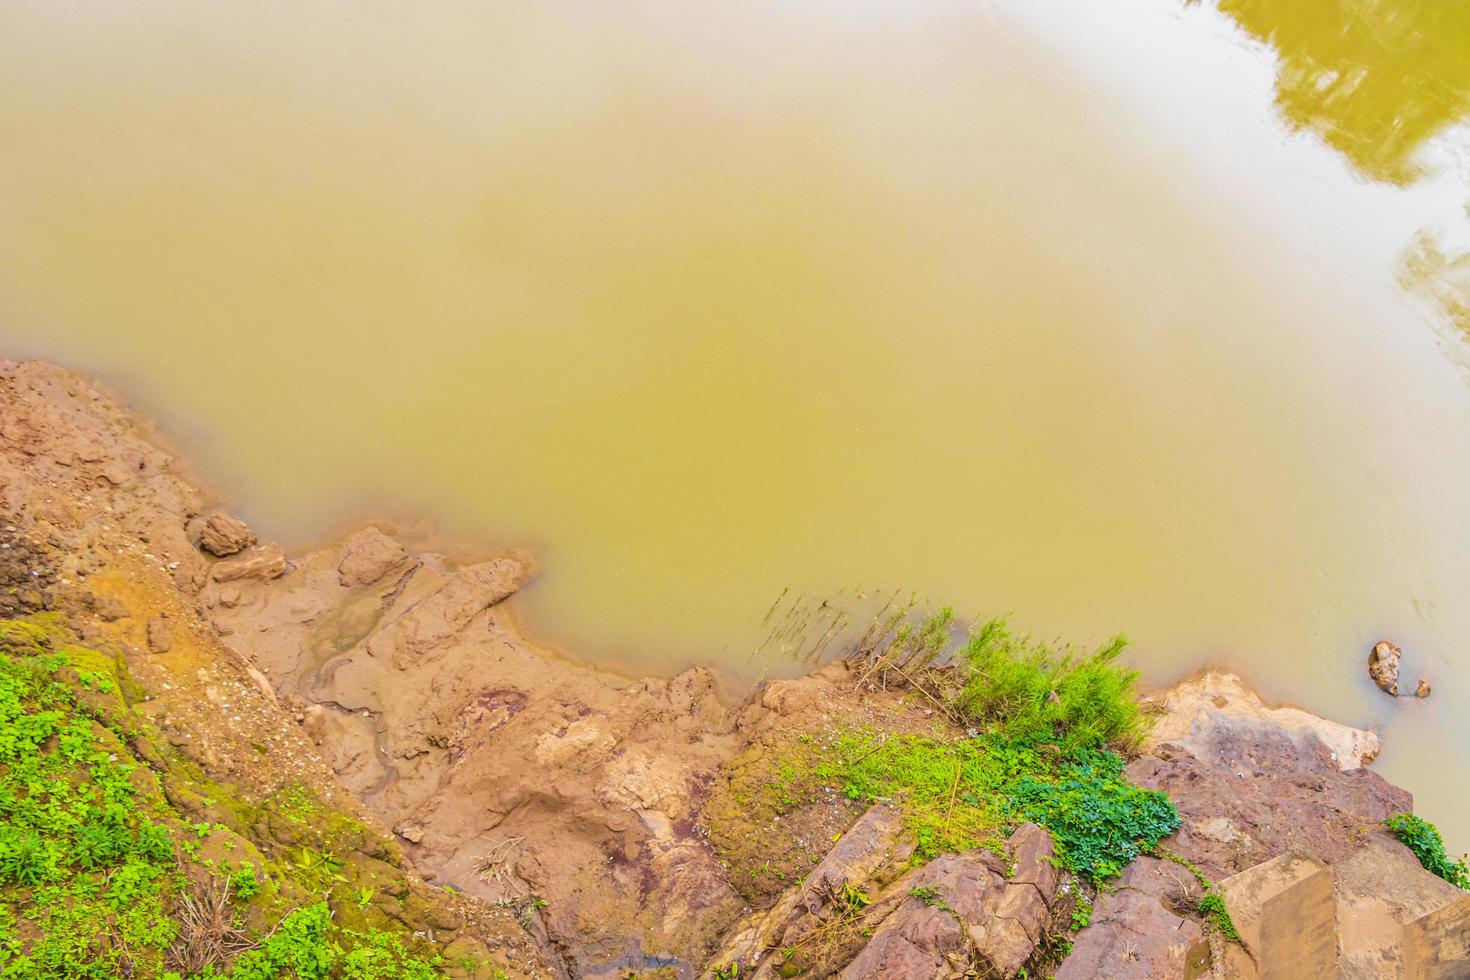 río mekong luang prabang laos desde arriba con suelo de malla. foto